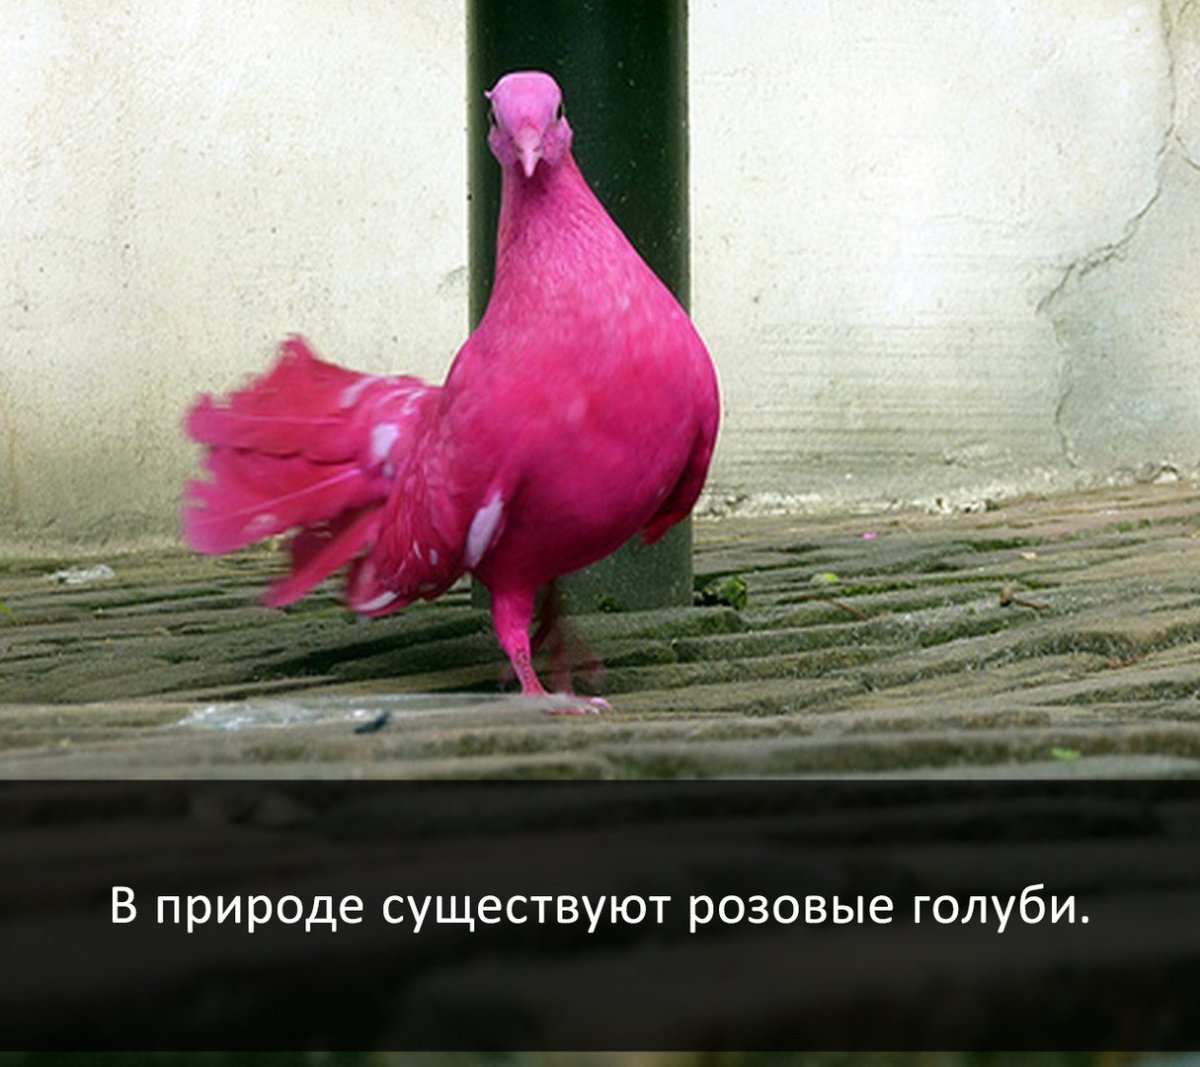 ФОТО: Розовый голубь 8